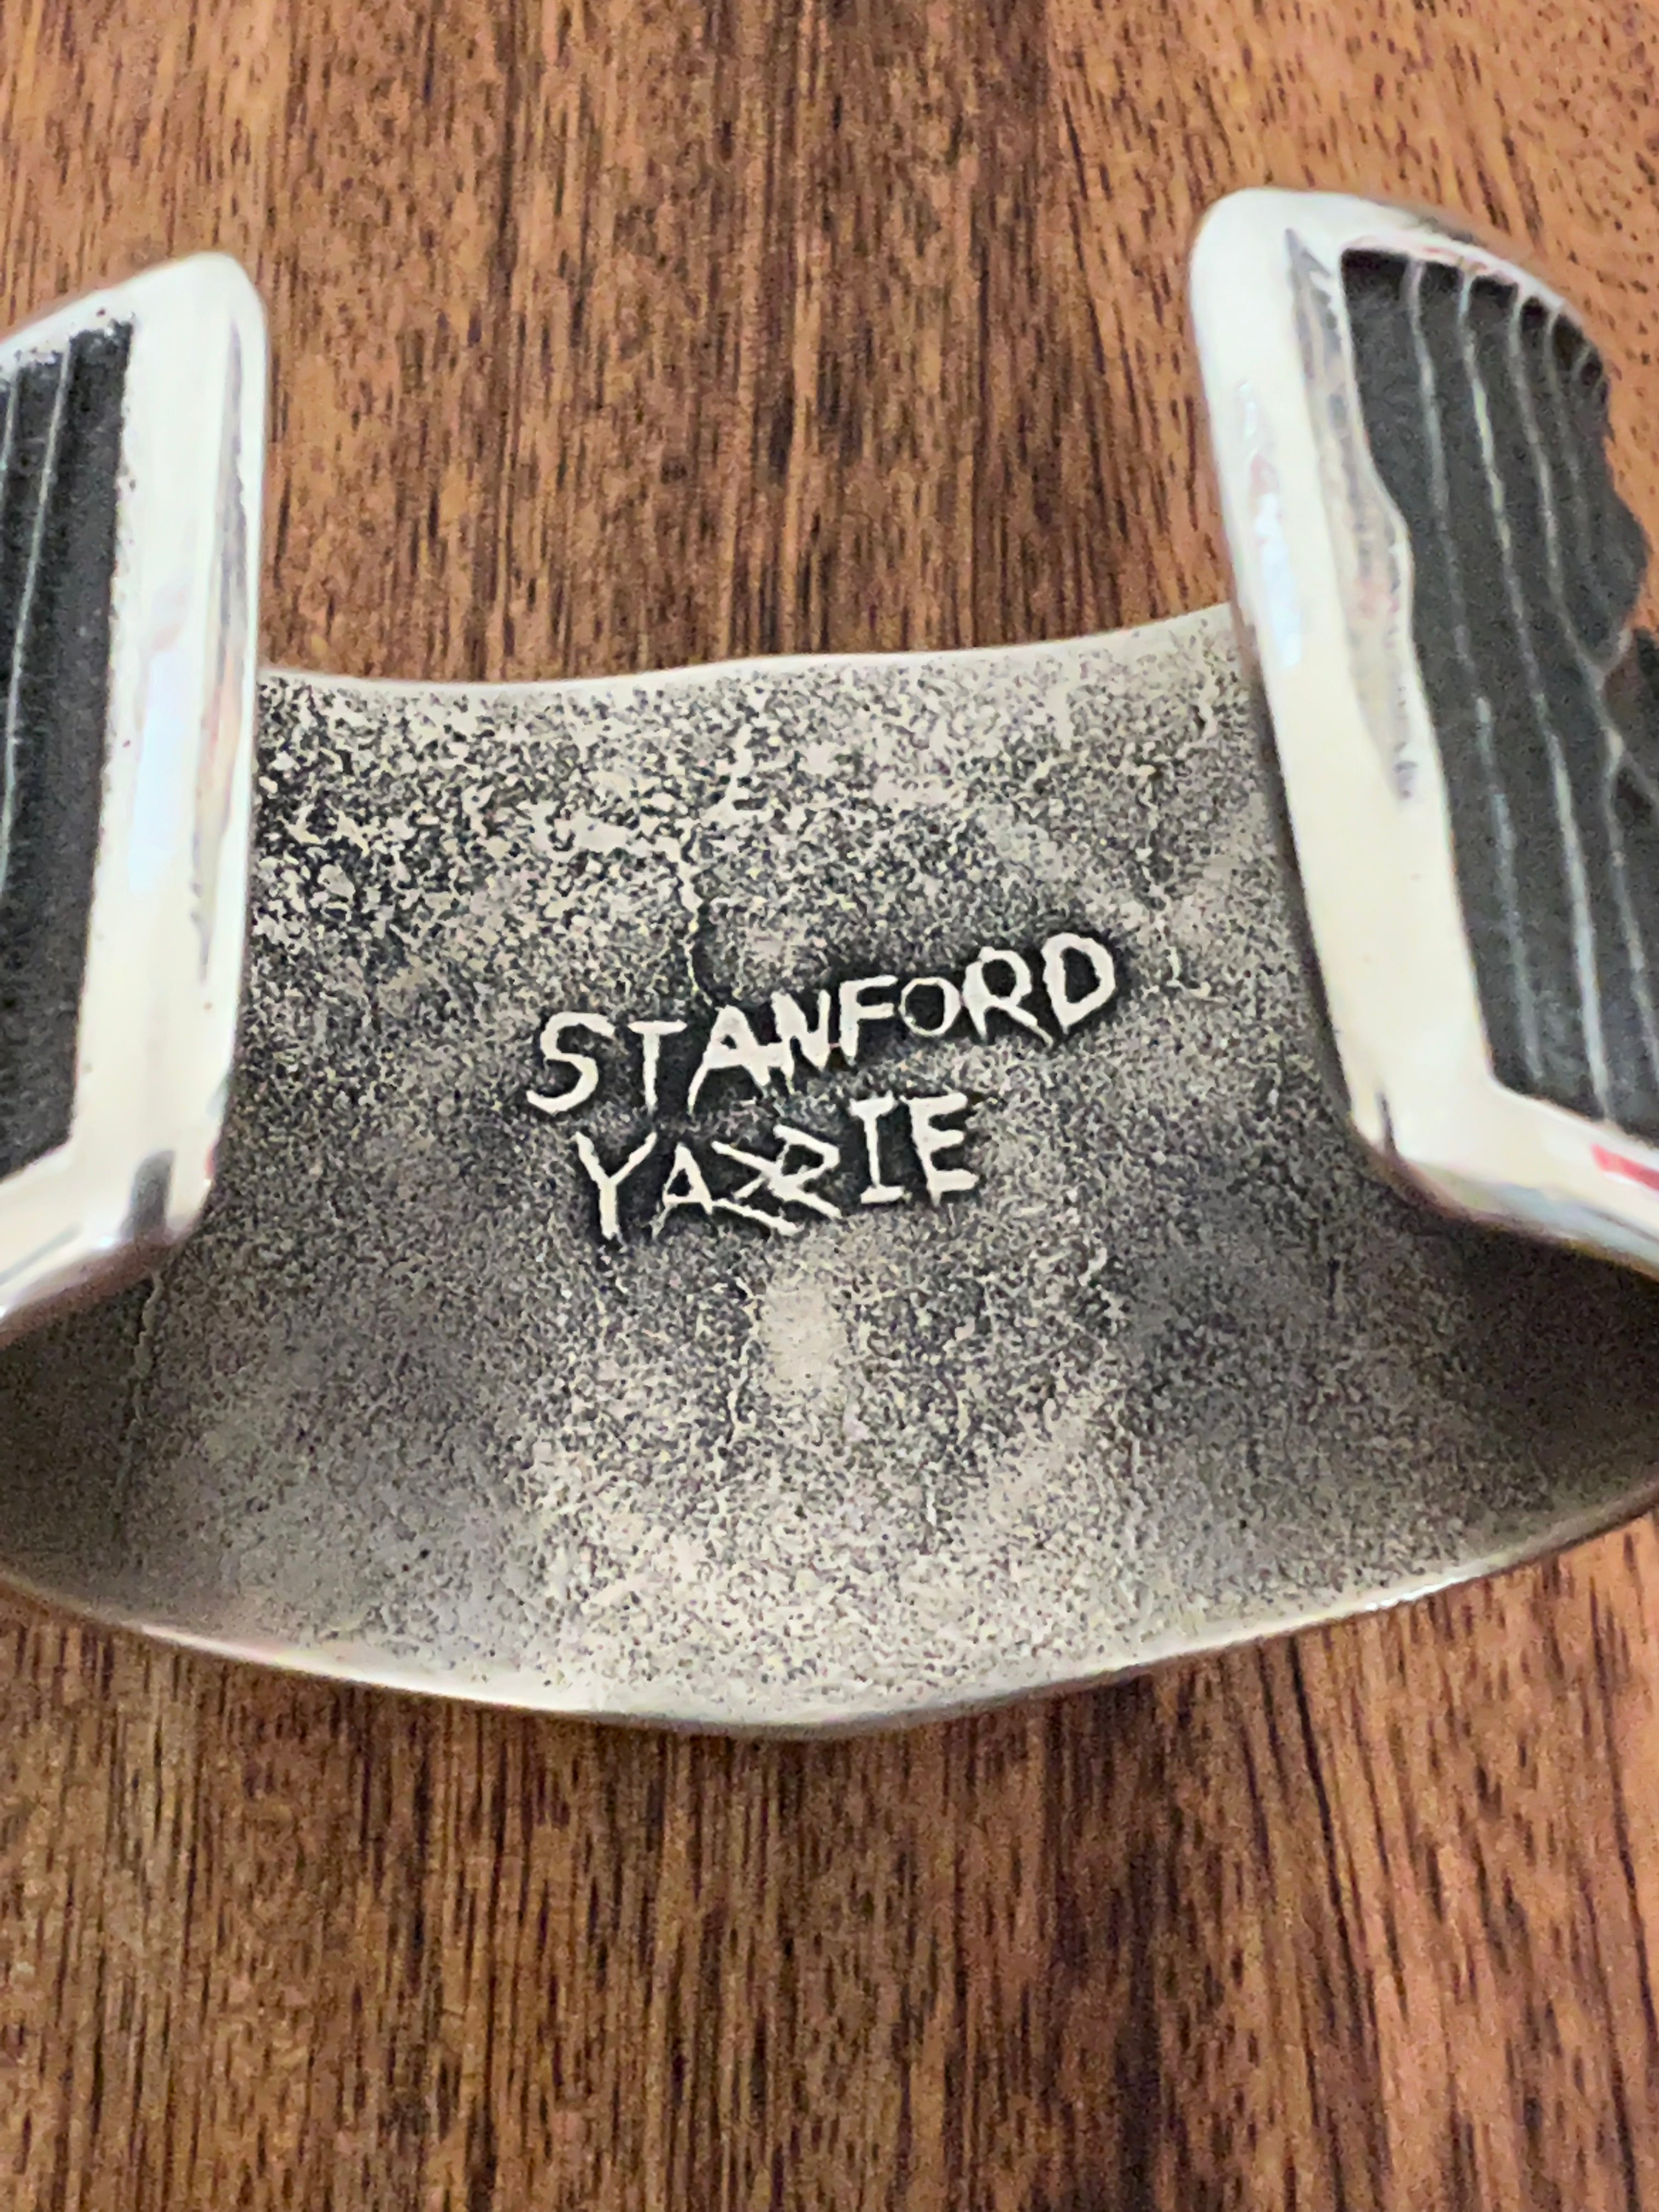 Stanford Yazzie Sterling Silver Cross Cuff Bracelet